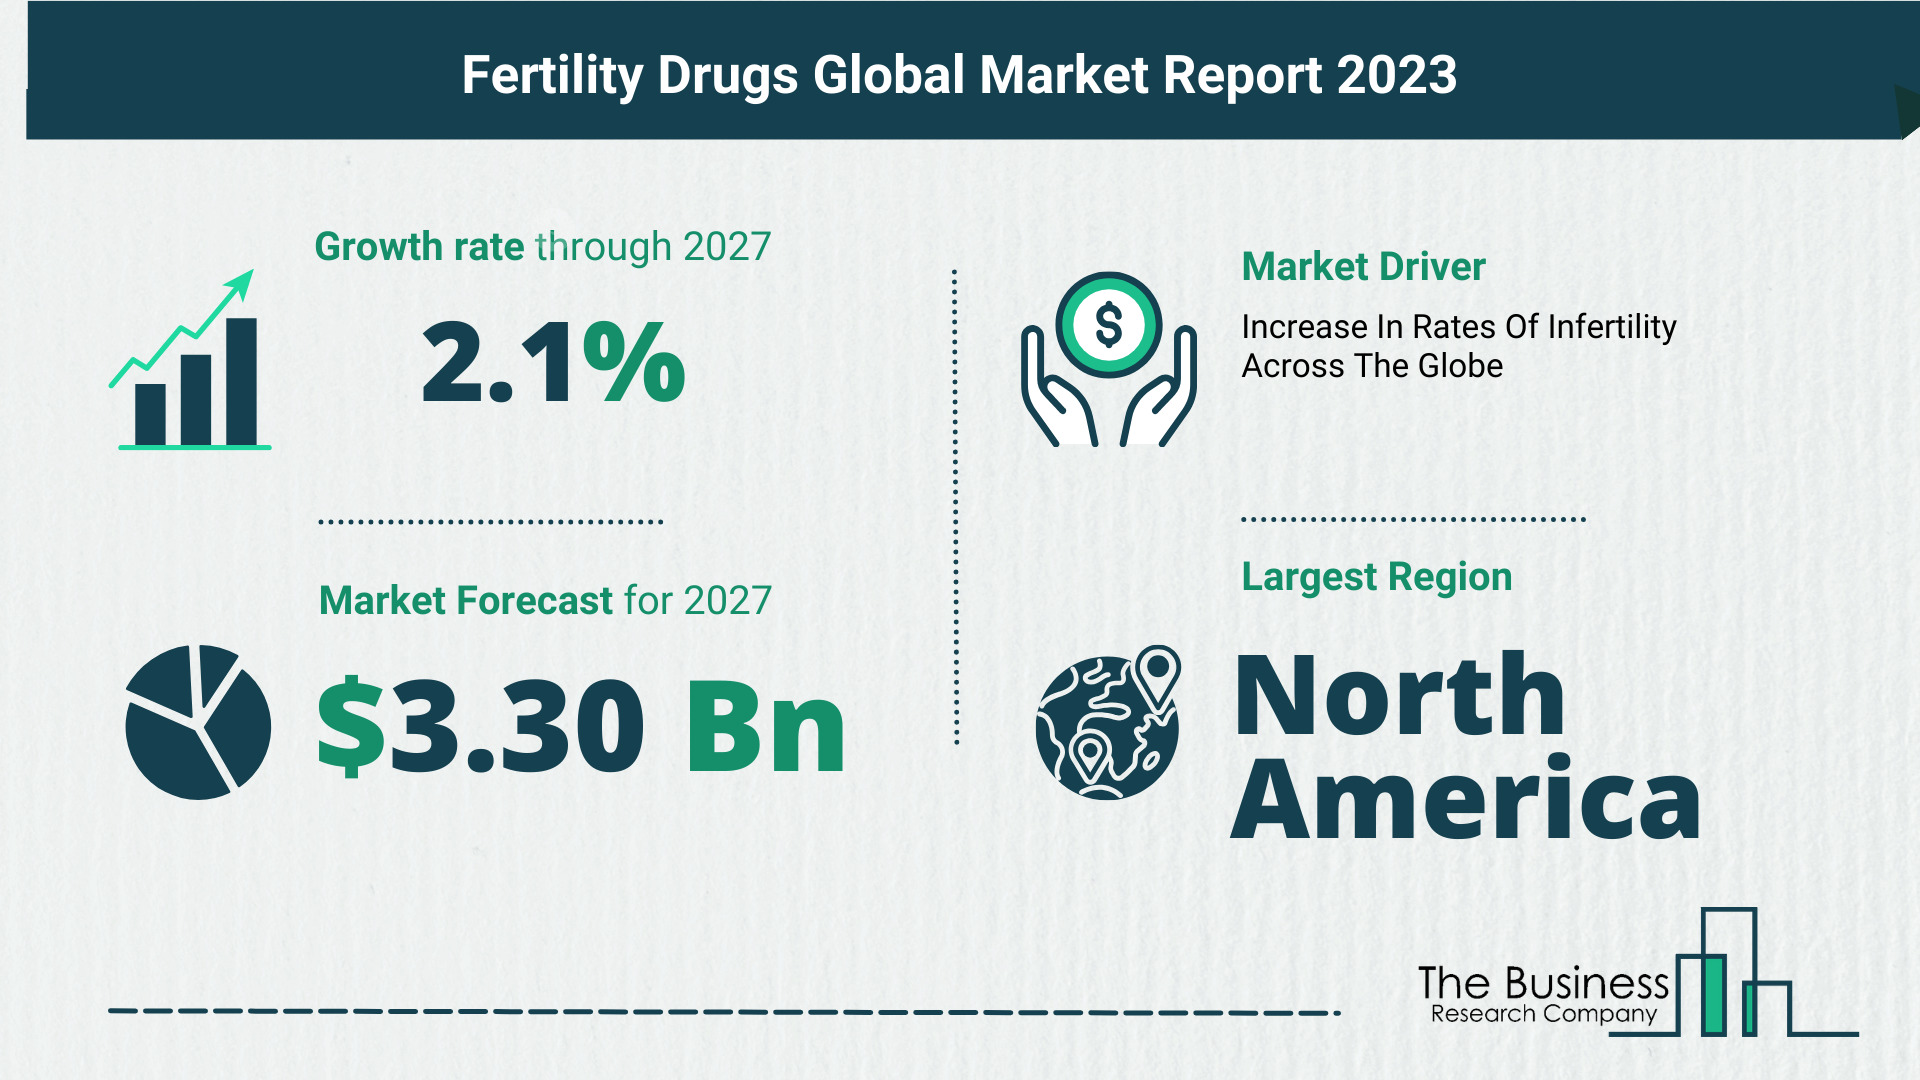 Global Fertility Drugs Market